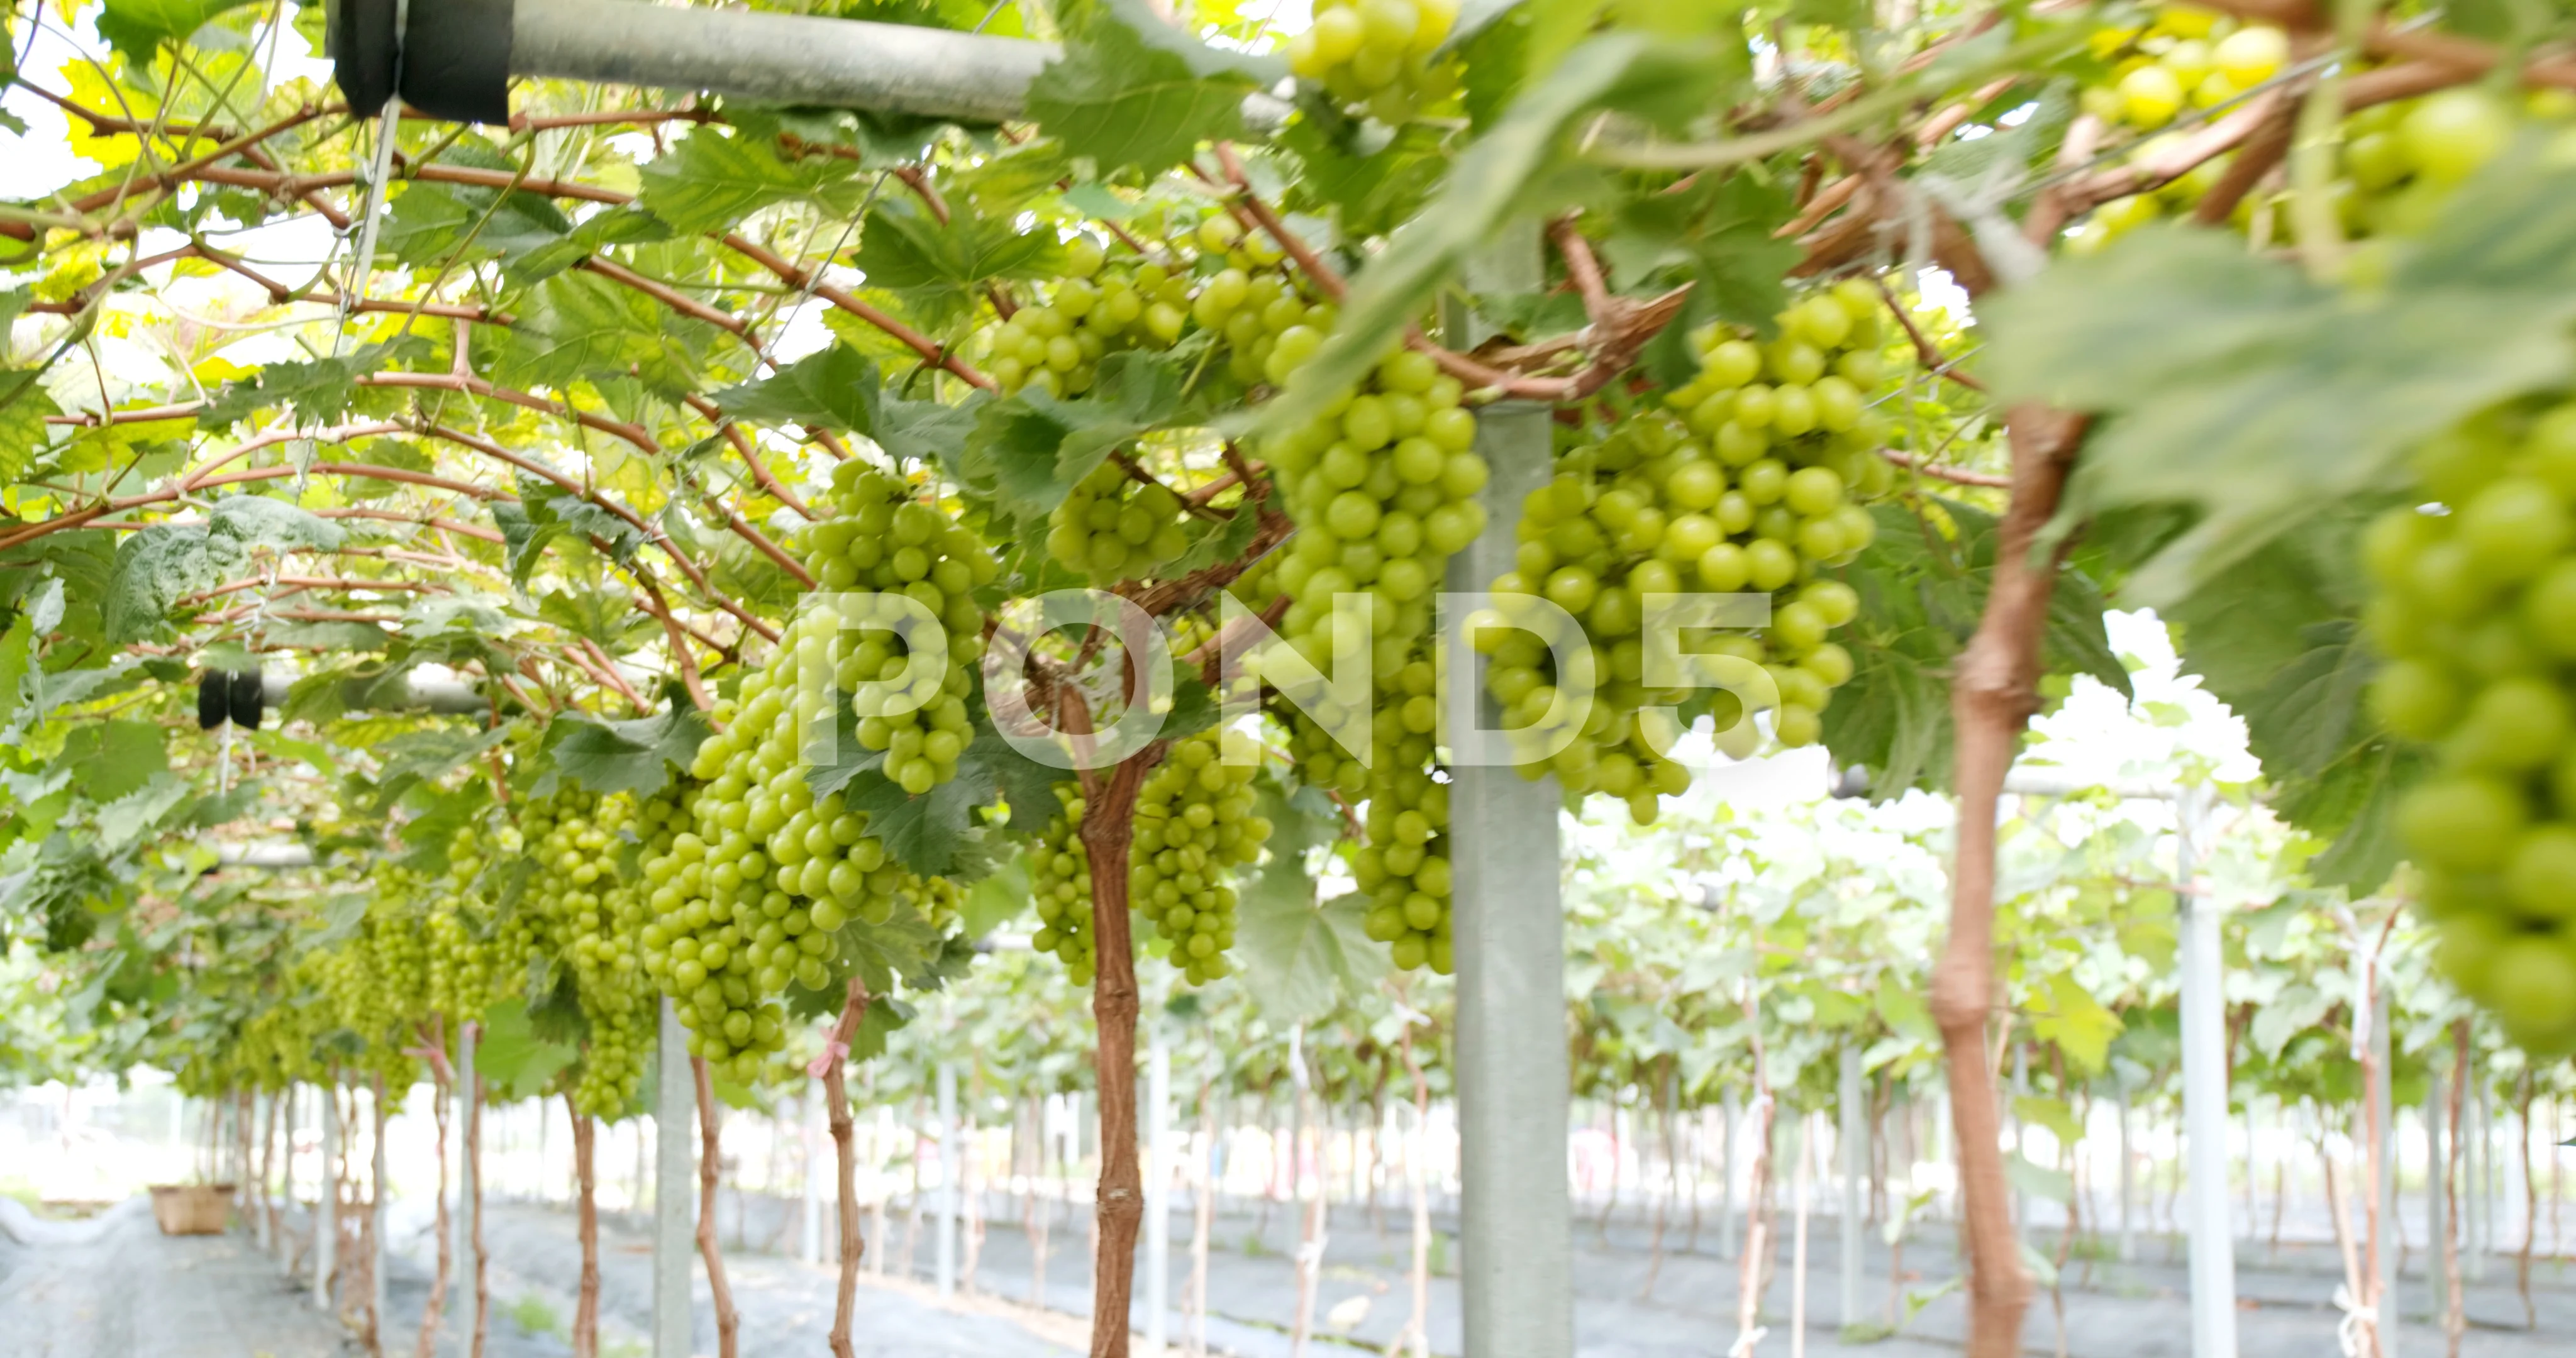 Grapes Garden Xxx Video - Fresh Grape farm garden | Stock Video | Pond5